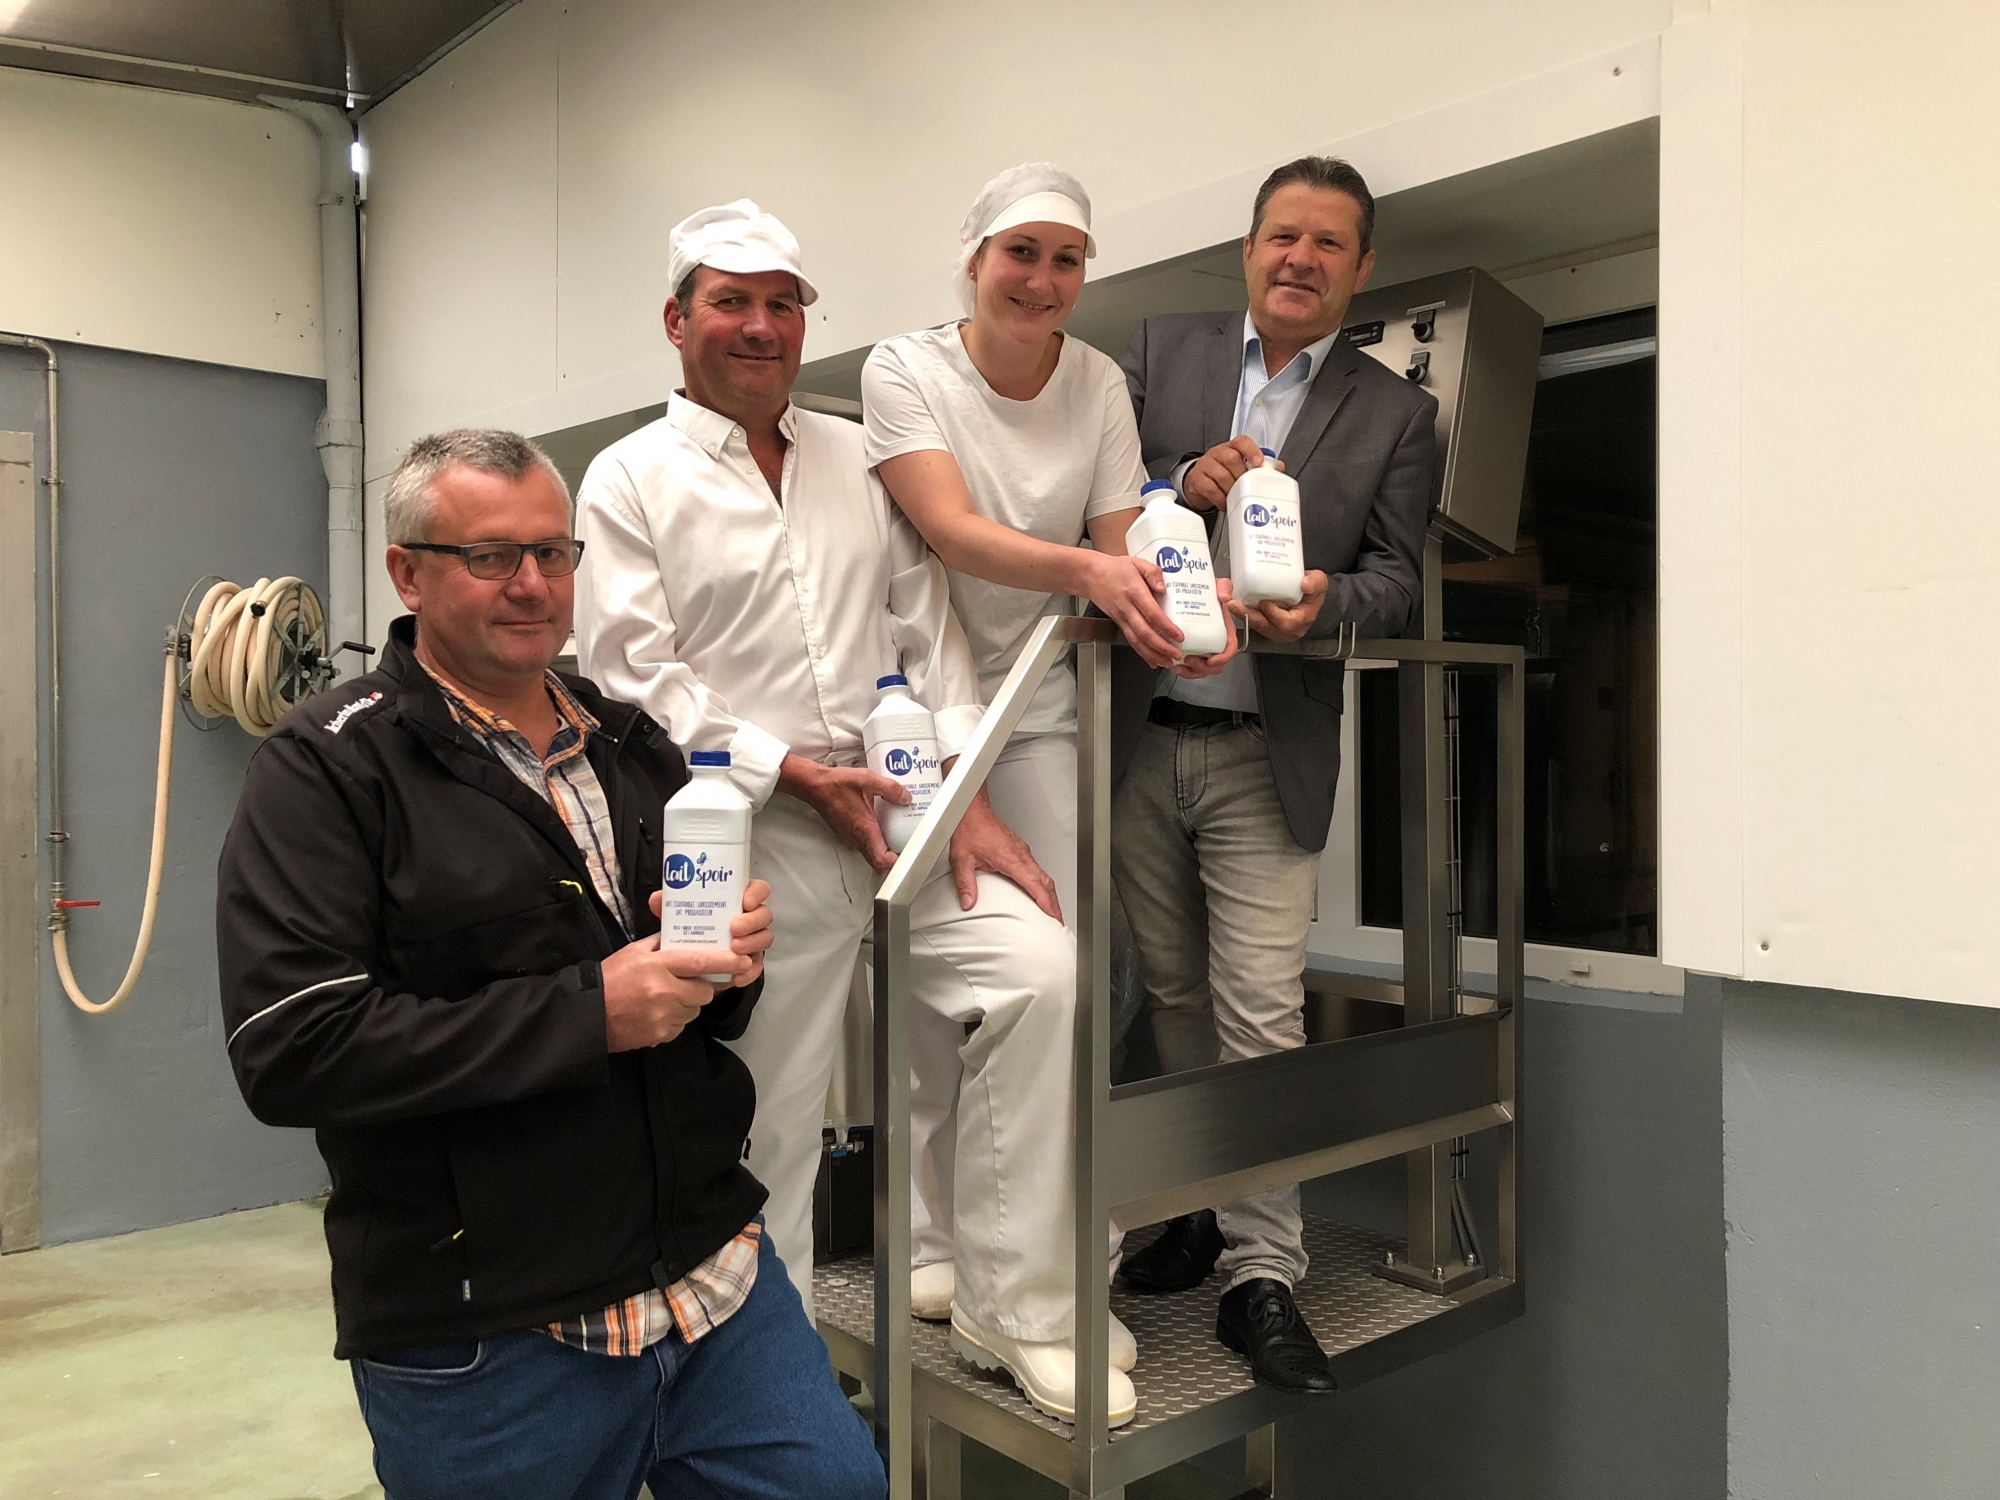 La nouvelle marque de lait, Laitspoir, a été présentée mercredi à Romanel-sur-Morges.